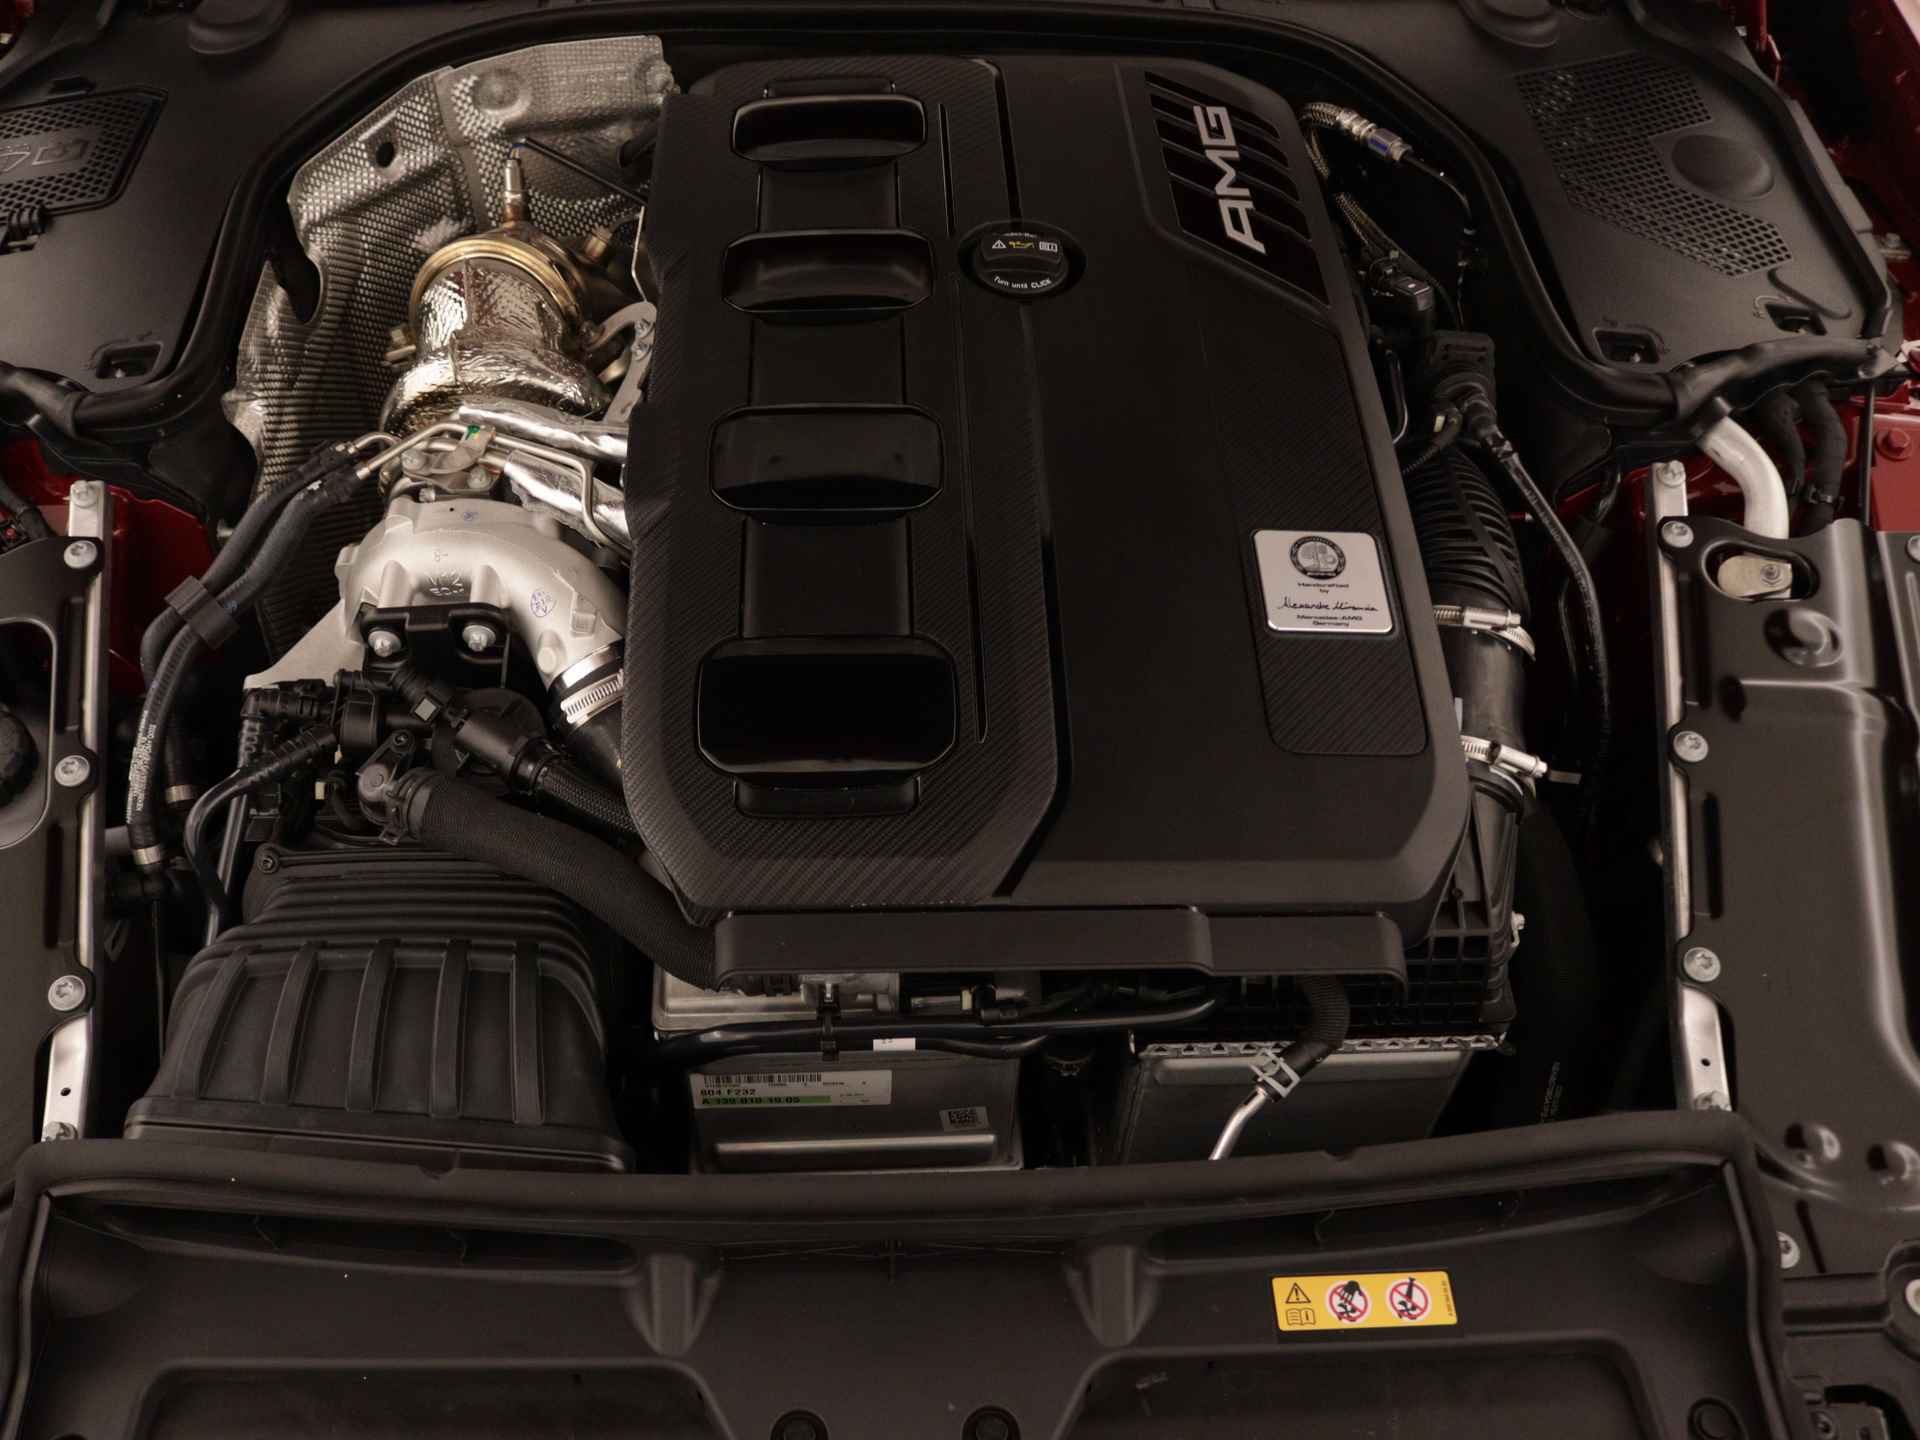 Mercedes-Benz SL-Klasse Roadster 43 | V8 Stylingpakket exterieur | AMG High Performance remsysteem | Veiligheidsgordels nevagrijs | AMG Nightpakket |  Remklauwen zilver | ENERGIZING-pakket plus | Memorypakket | Burmester Surround Sound systeem | - 34/42